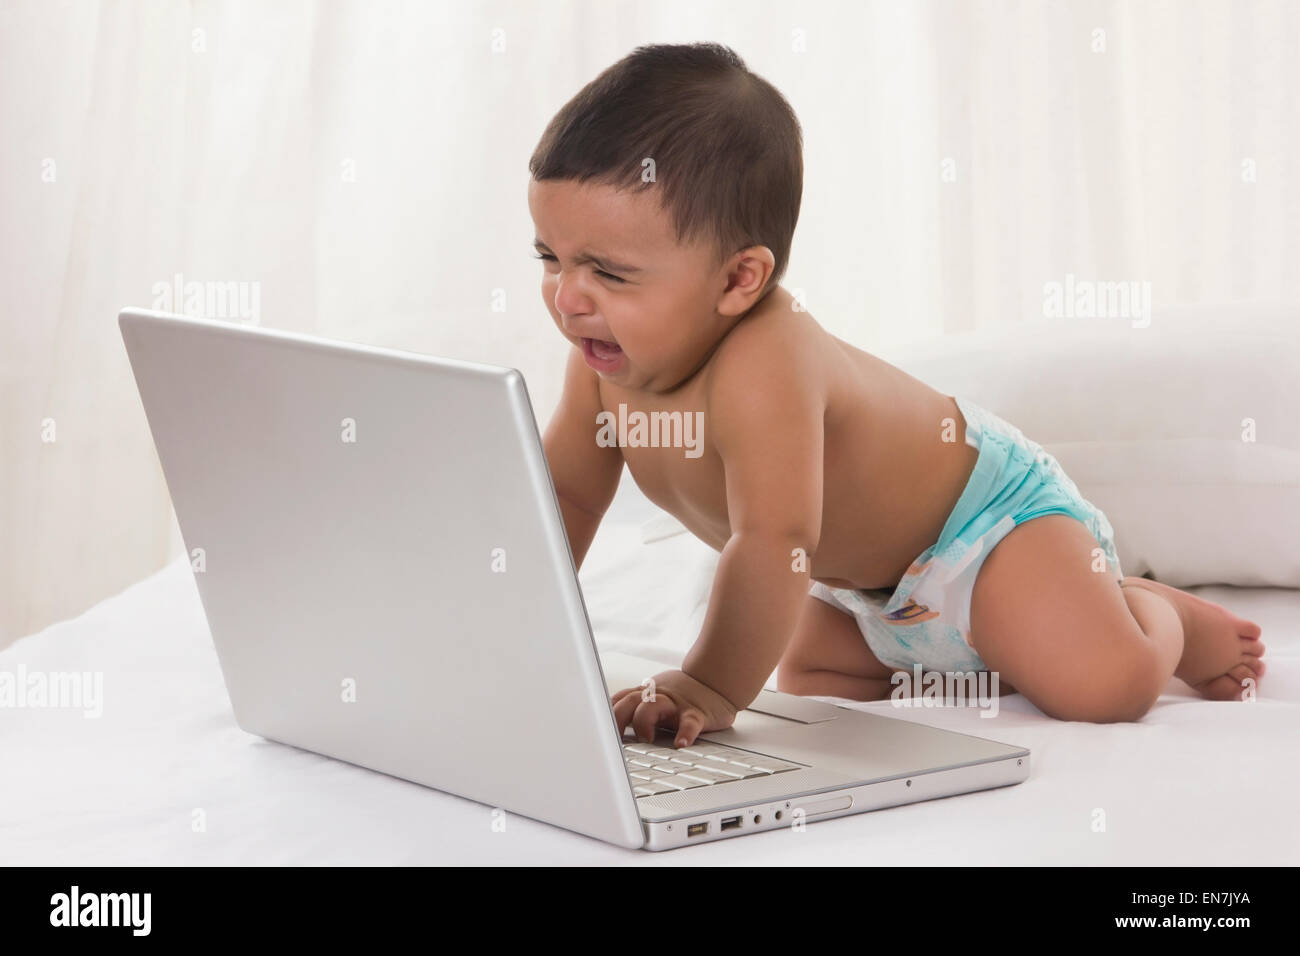 Baby mit Laptop zu weinen Stockfotografie - Alamy